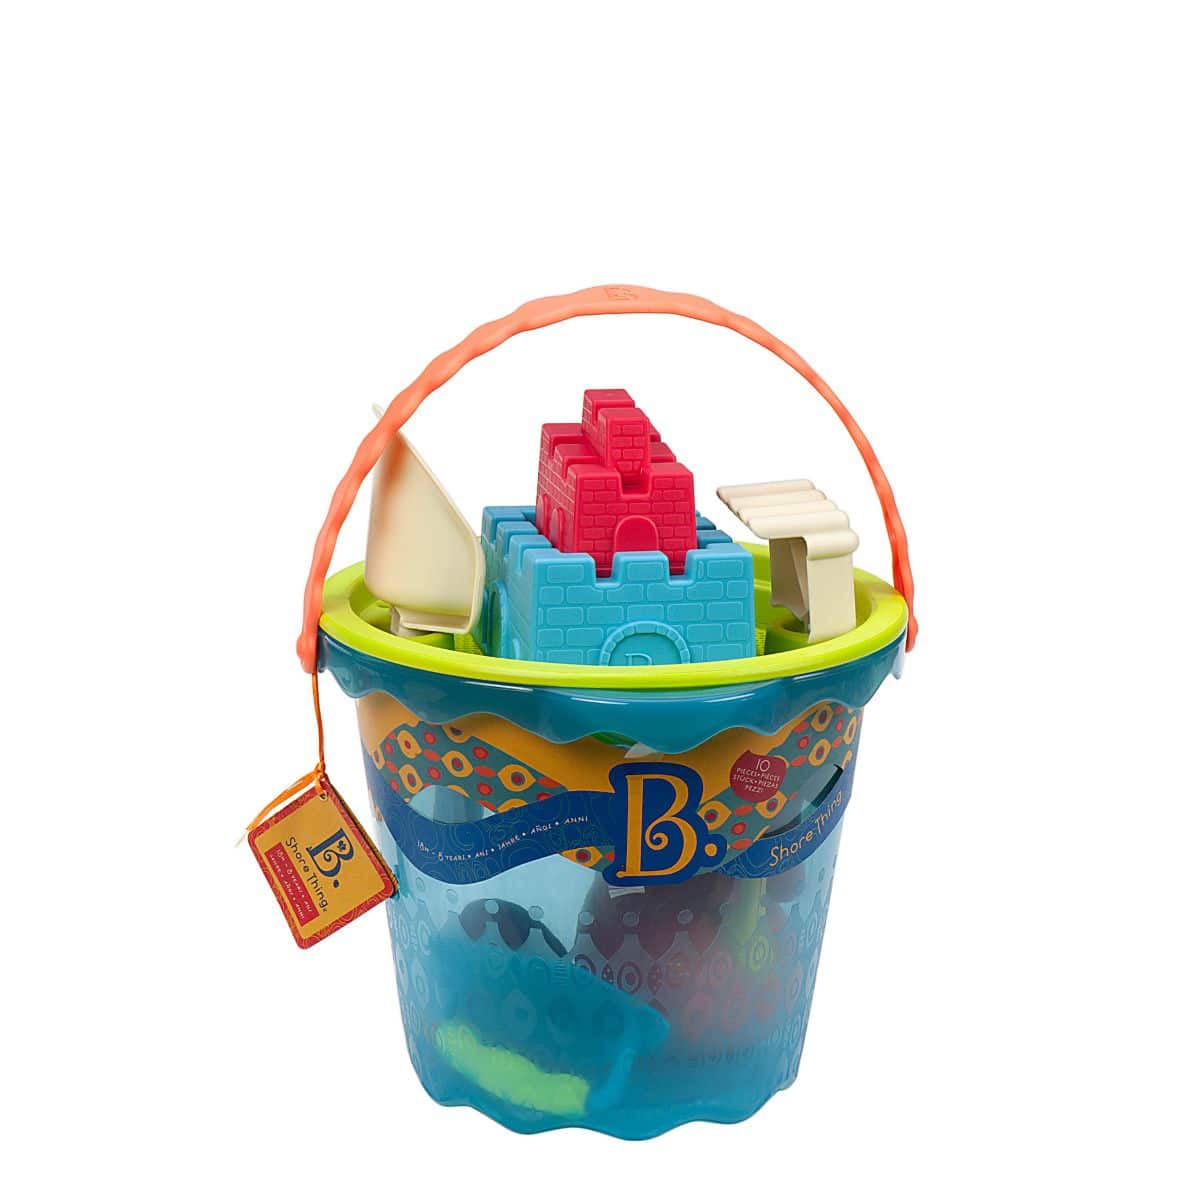 Beach toys with blue bucket.